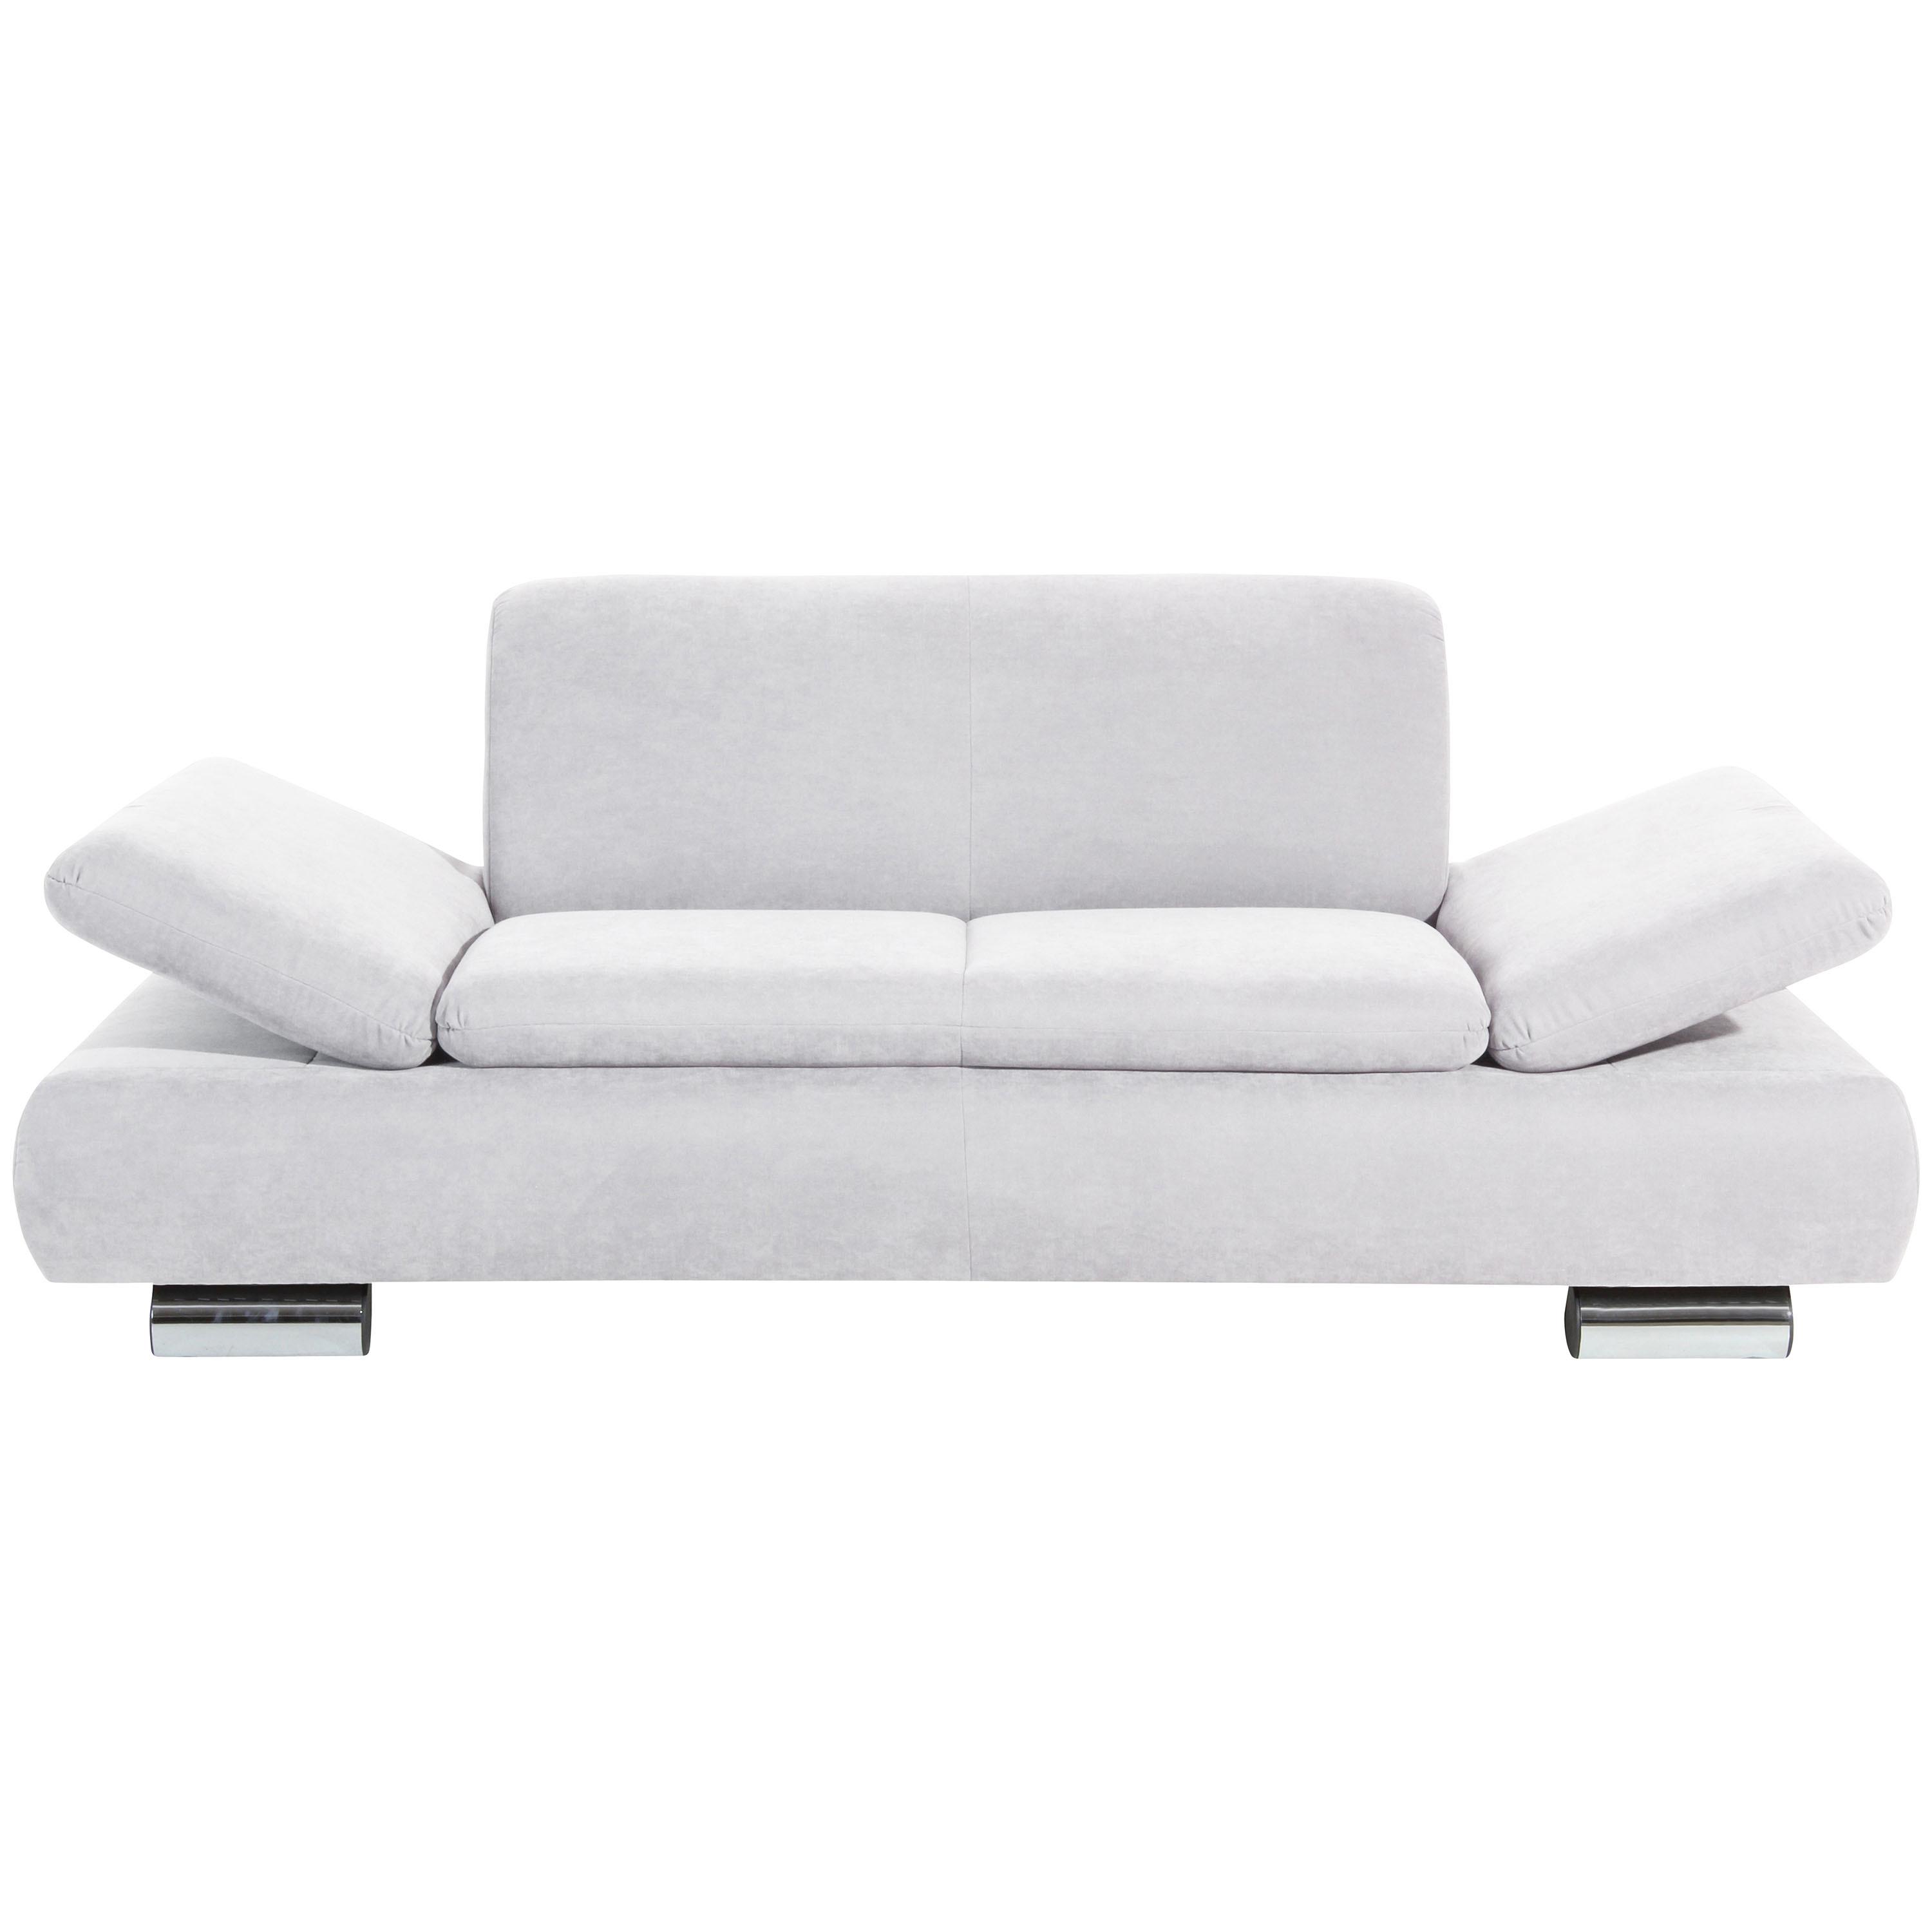 2-Sitzer-Sofa Terrence Armteil verstellbar, Creme Velours - Creme, Design, Textil (190/76/90cm) - Max Winzer